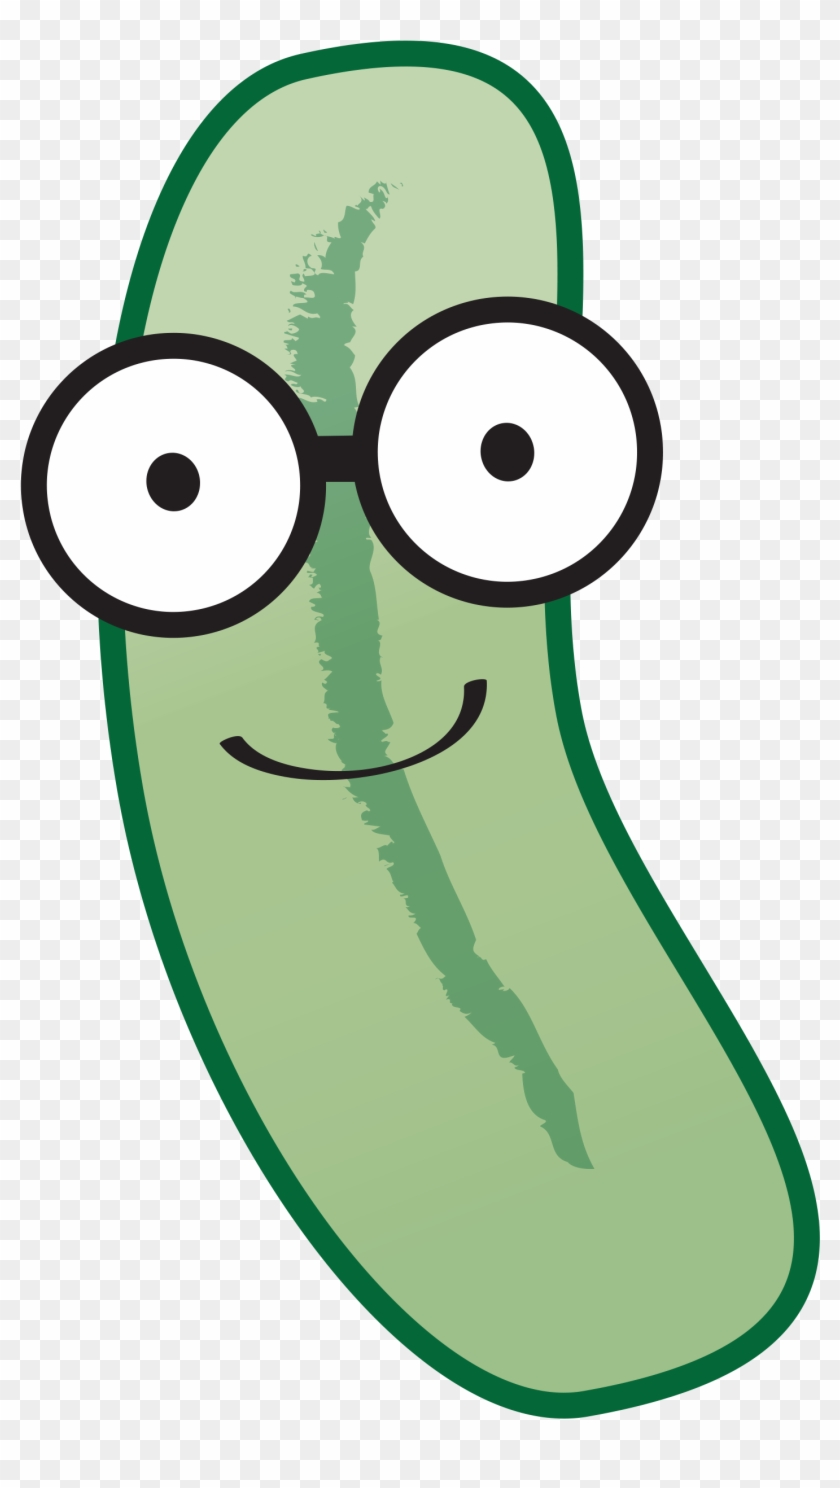 Pickle Clipart Huge - Pickle Clipart Huge #601450